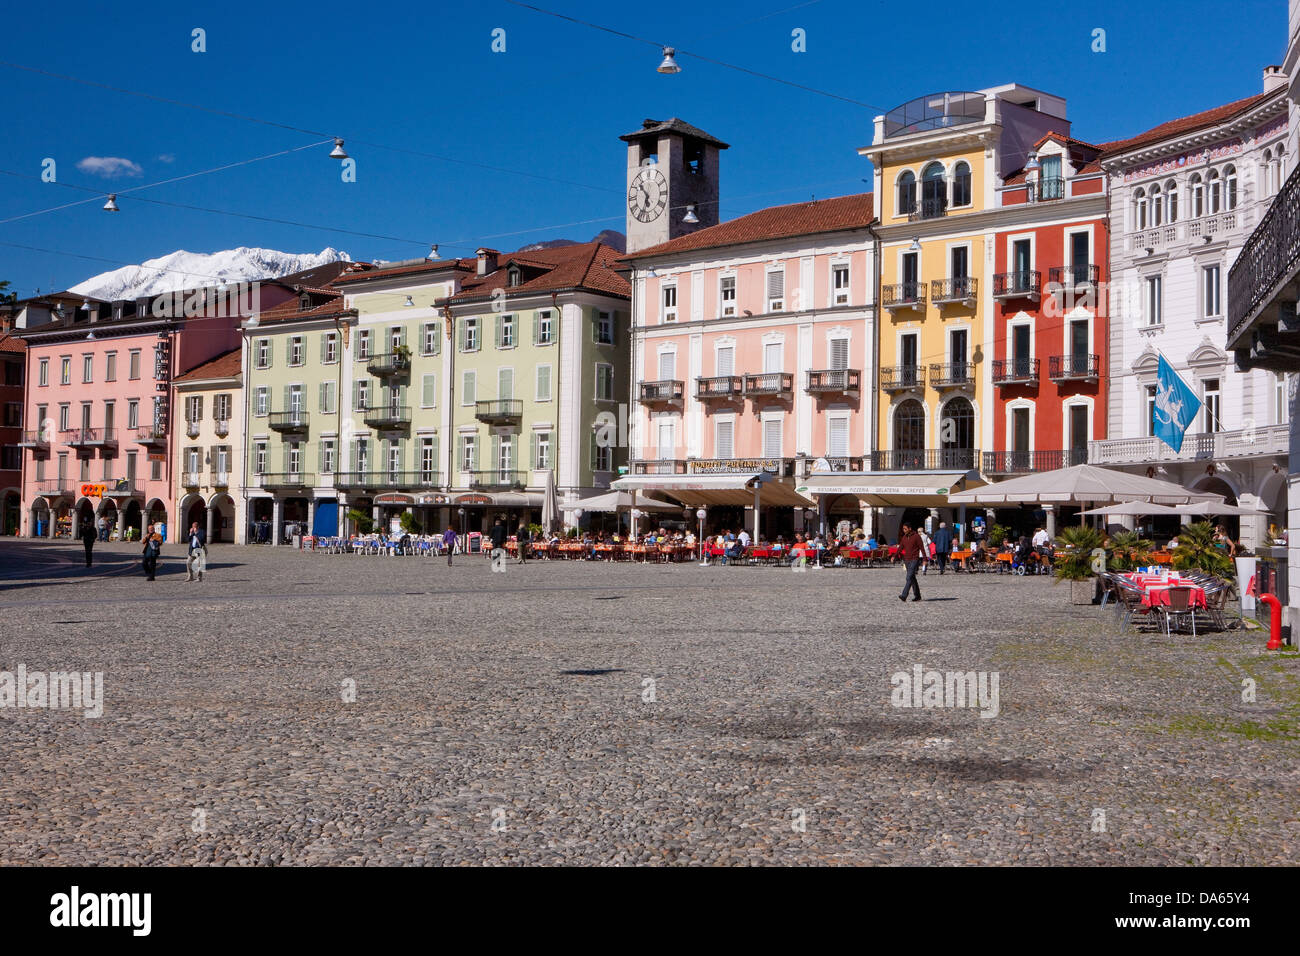 Piazza Grande, place, Locarno, canton, TI, Ticino, South Switzerland, town, city, Switzerland, Europe, facades Stock Photo